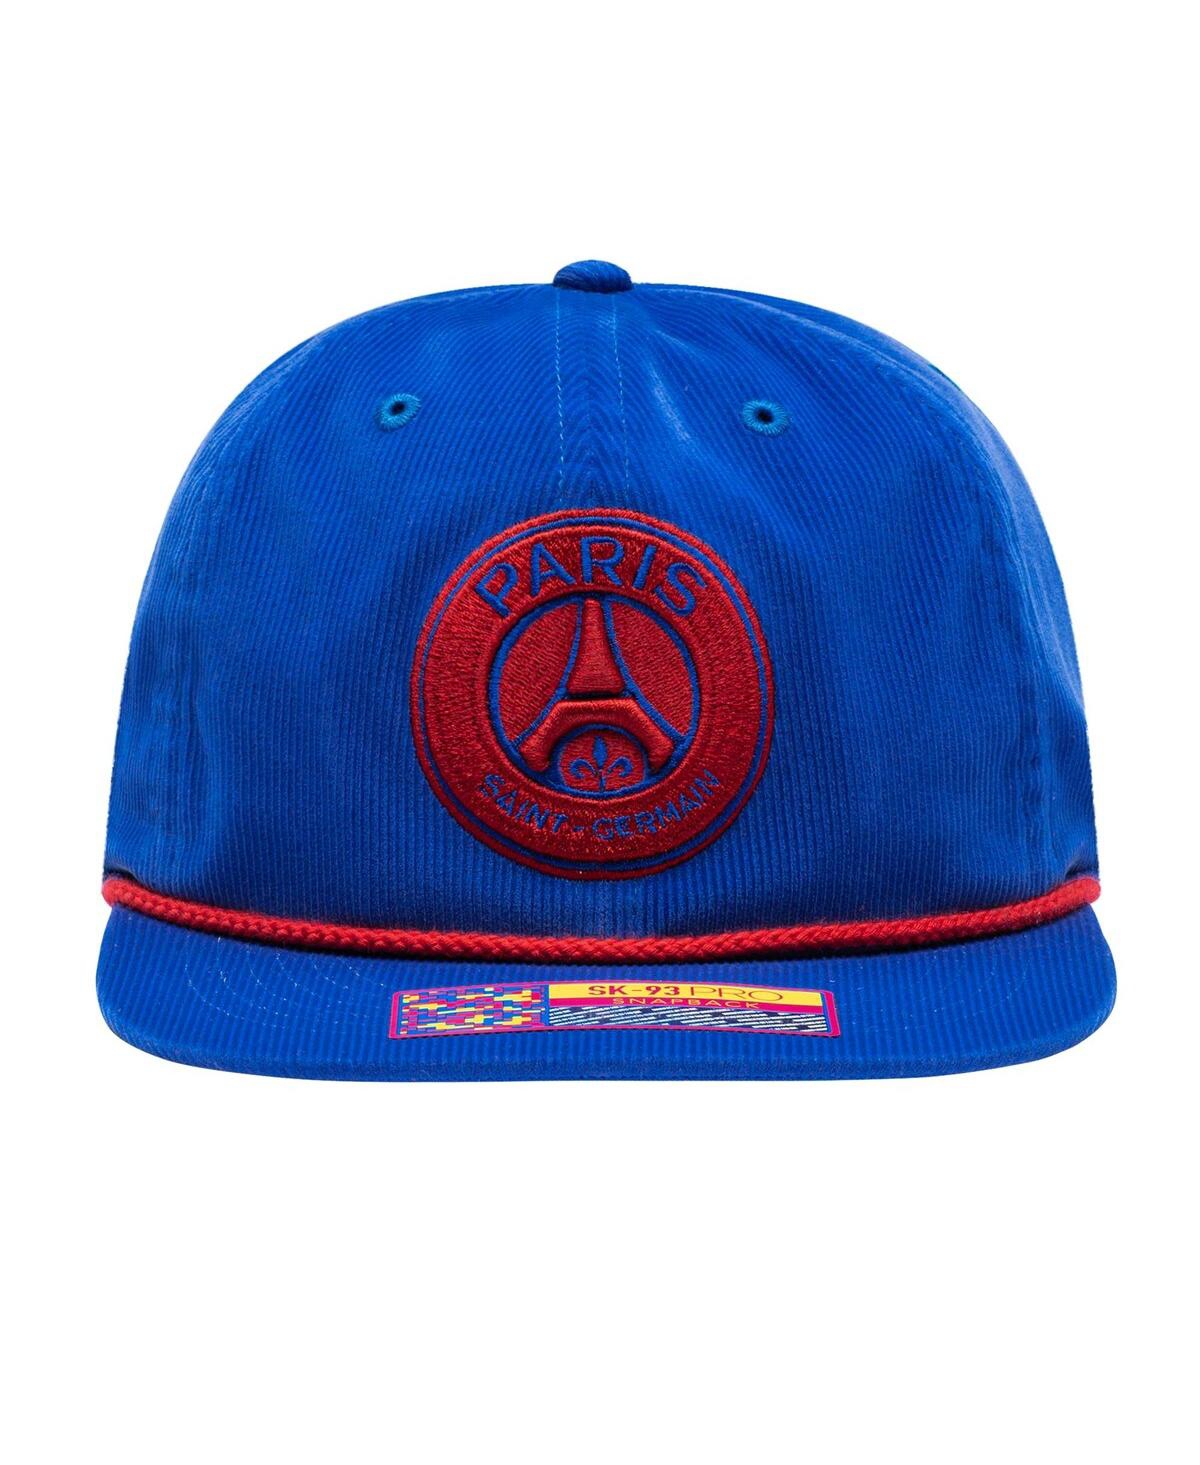 Shop Fan Ink Men's Blue Paris Saint-germain Snow Beach Adjustable Hat